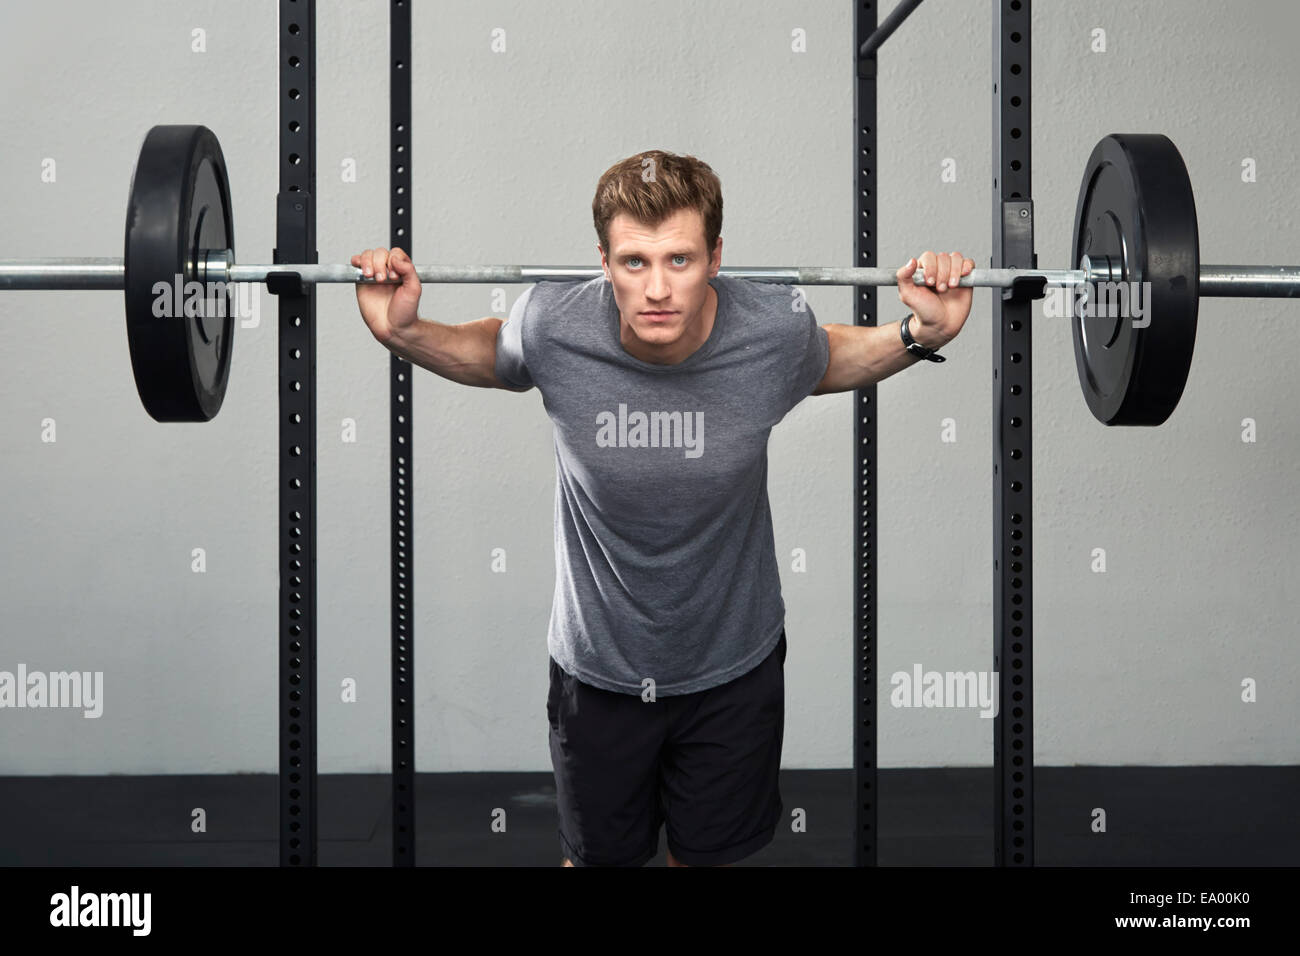 Porträt von Mitte erwachsenen männlichen Gewichtheber heben Langhantel im Fitness-Studio Stockfoto